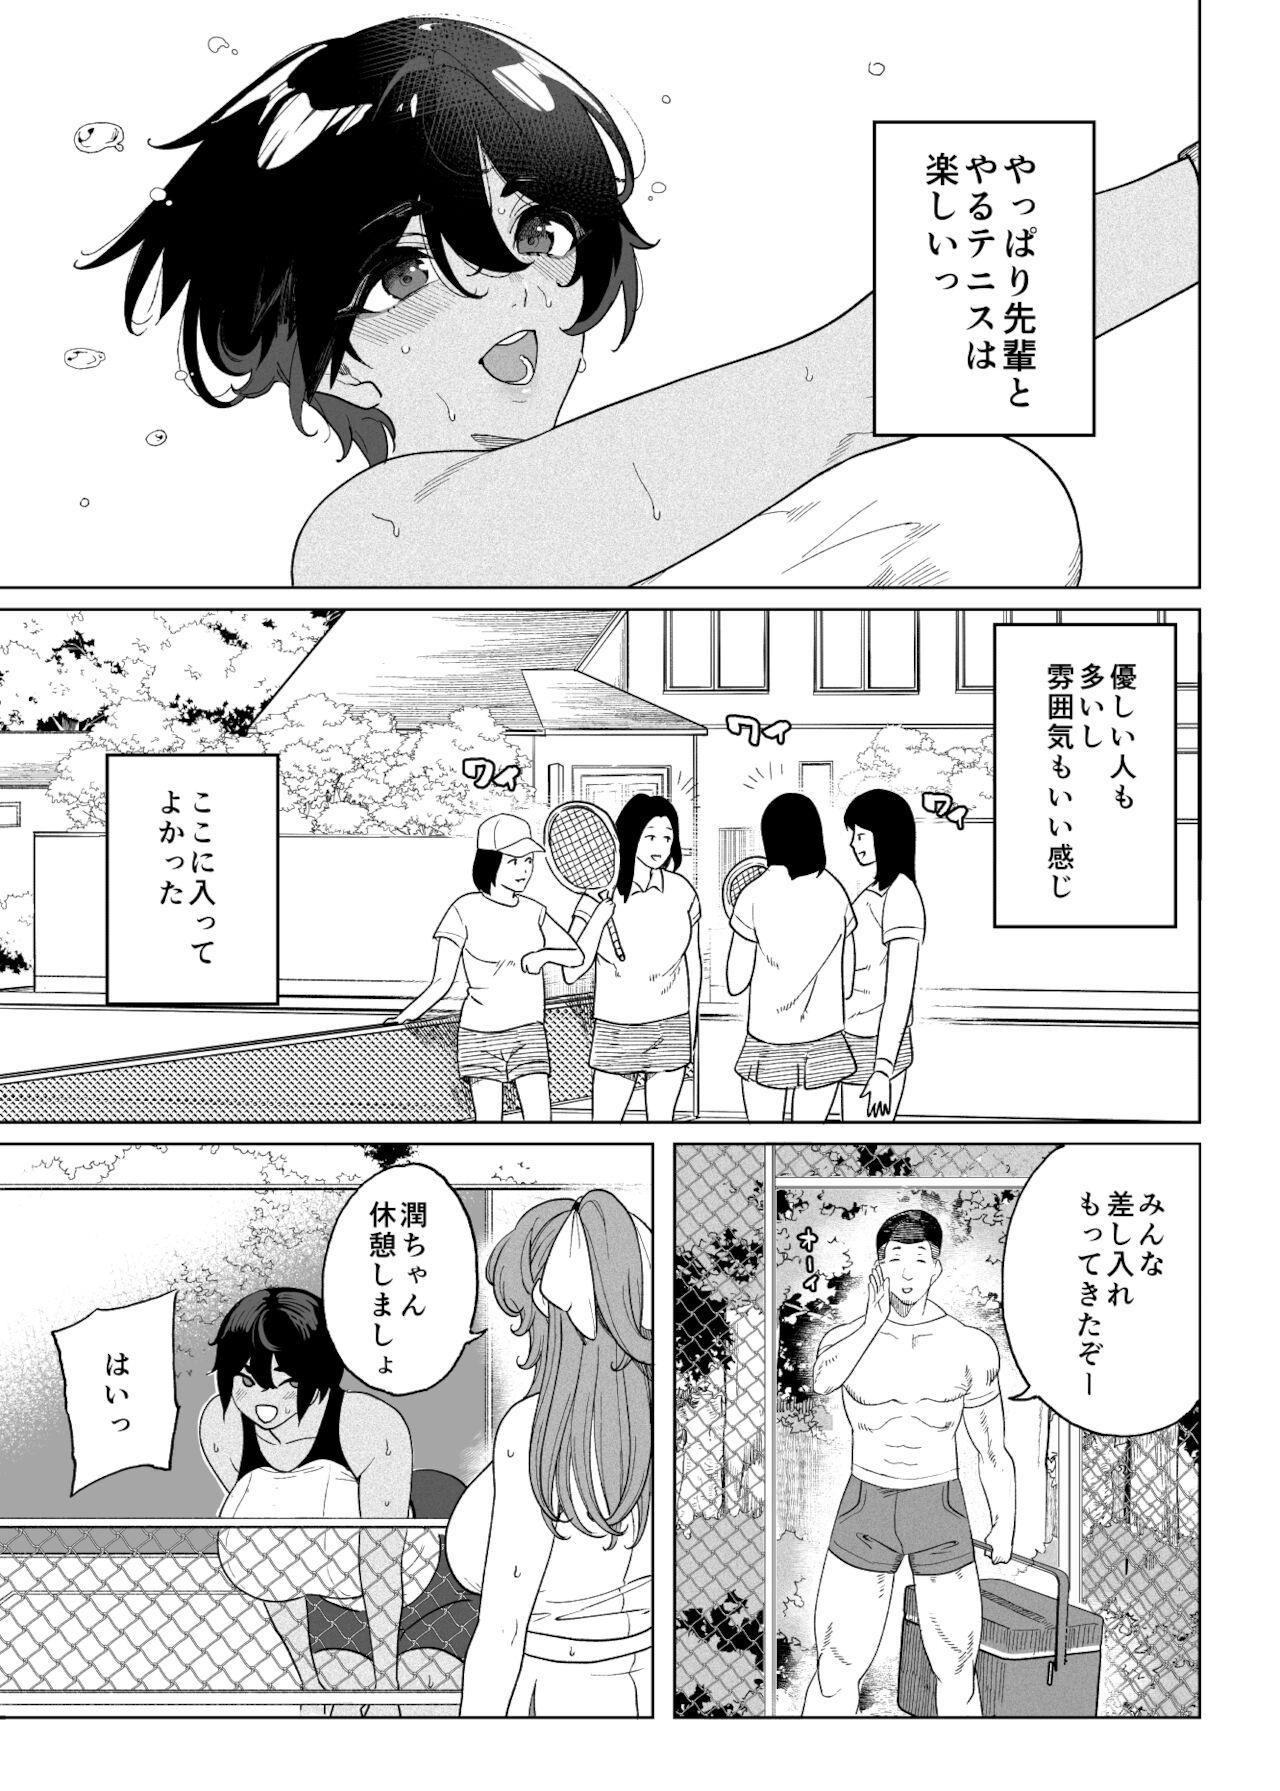 Porno 18 テニサー漫画前編+中編 - Original Thot - Page 7